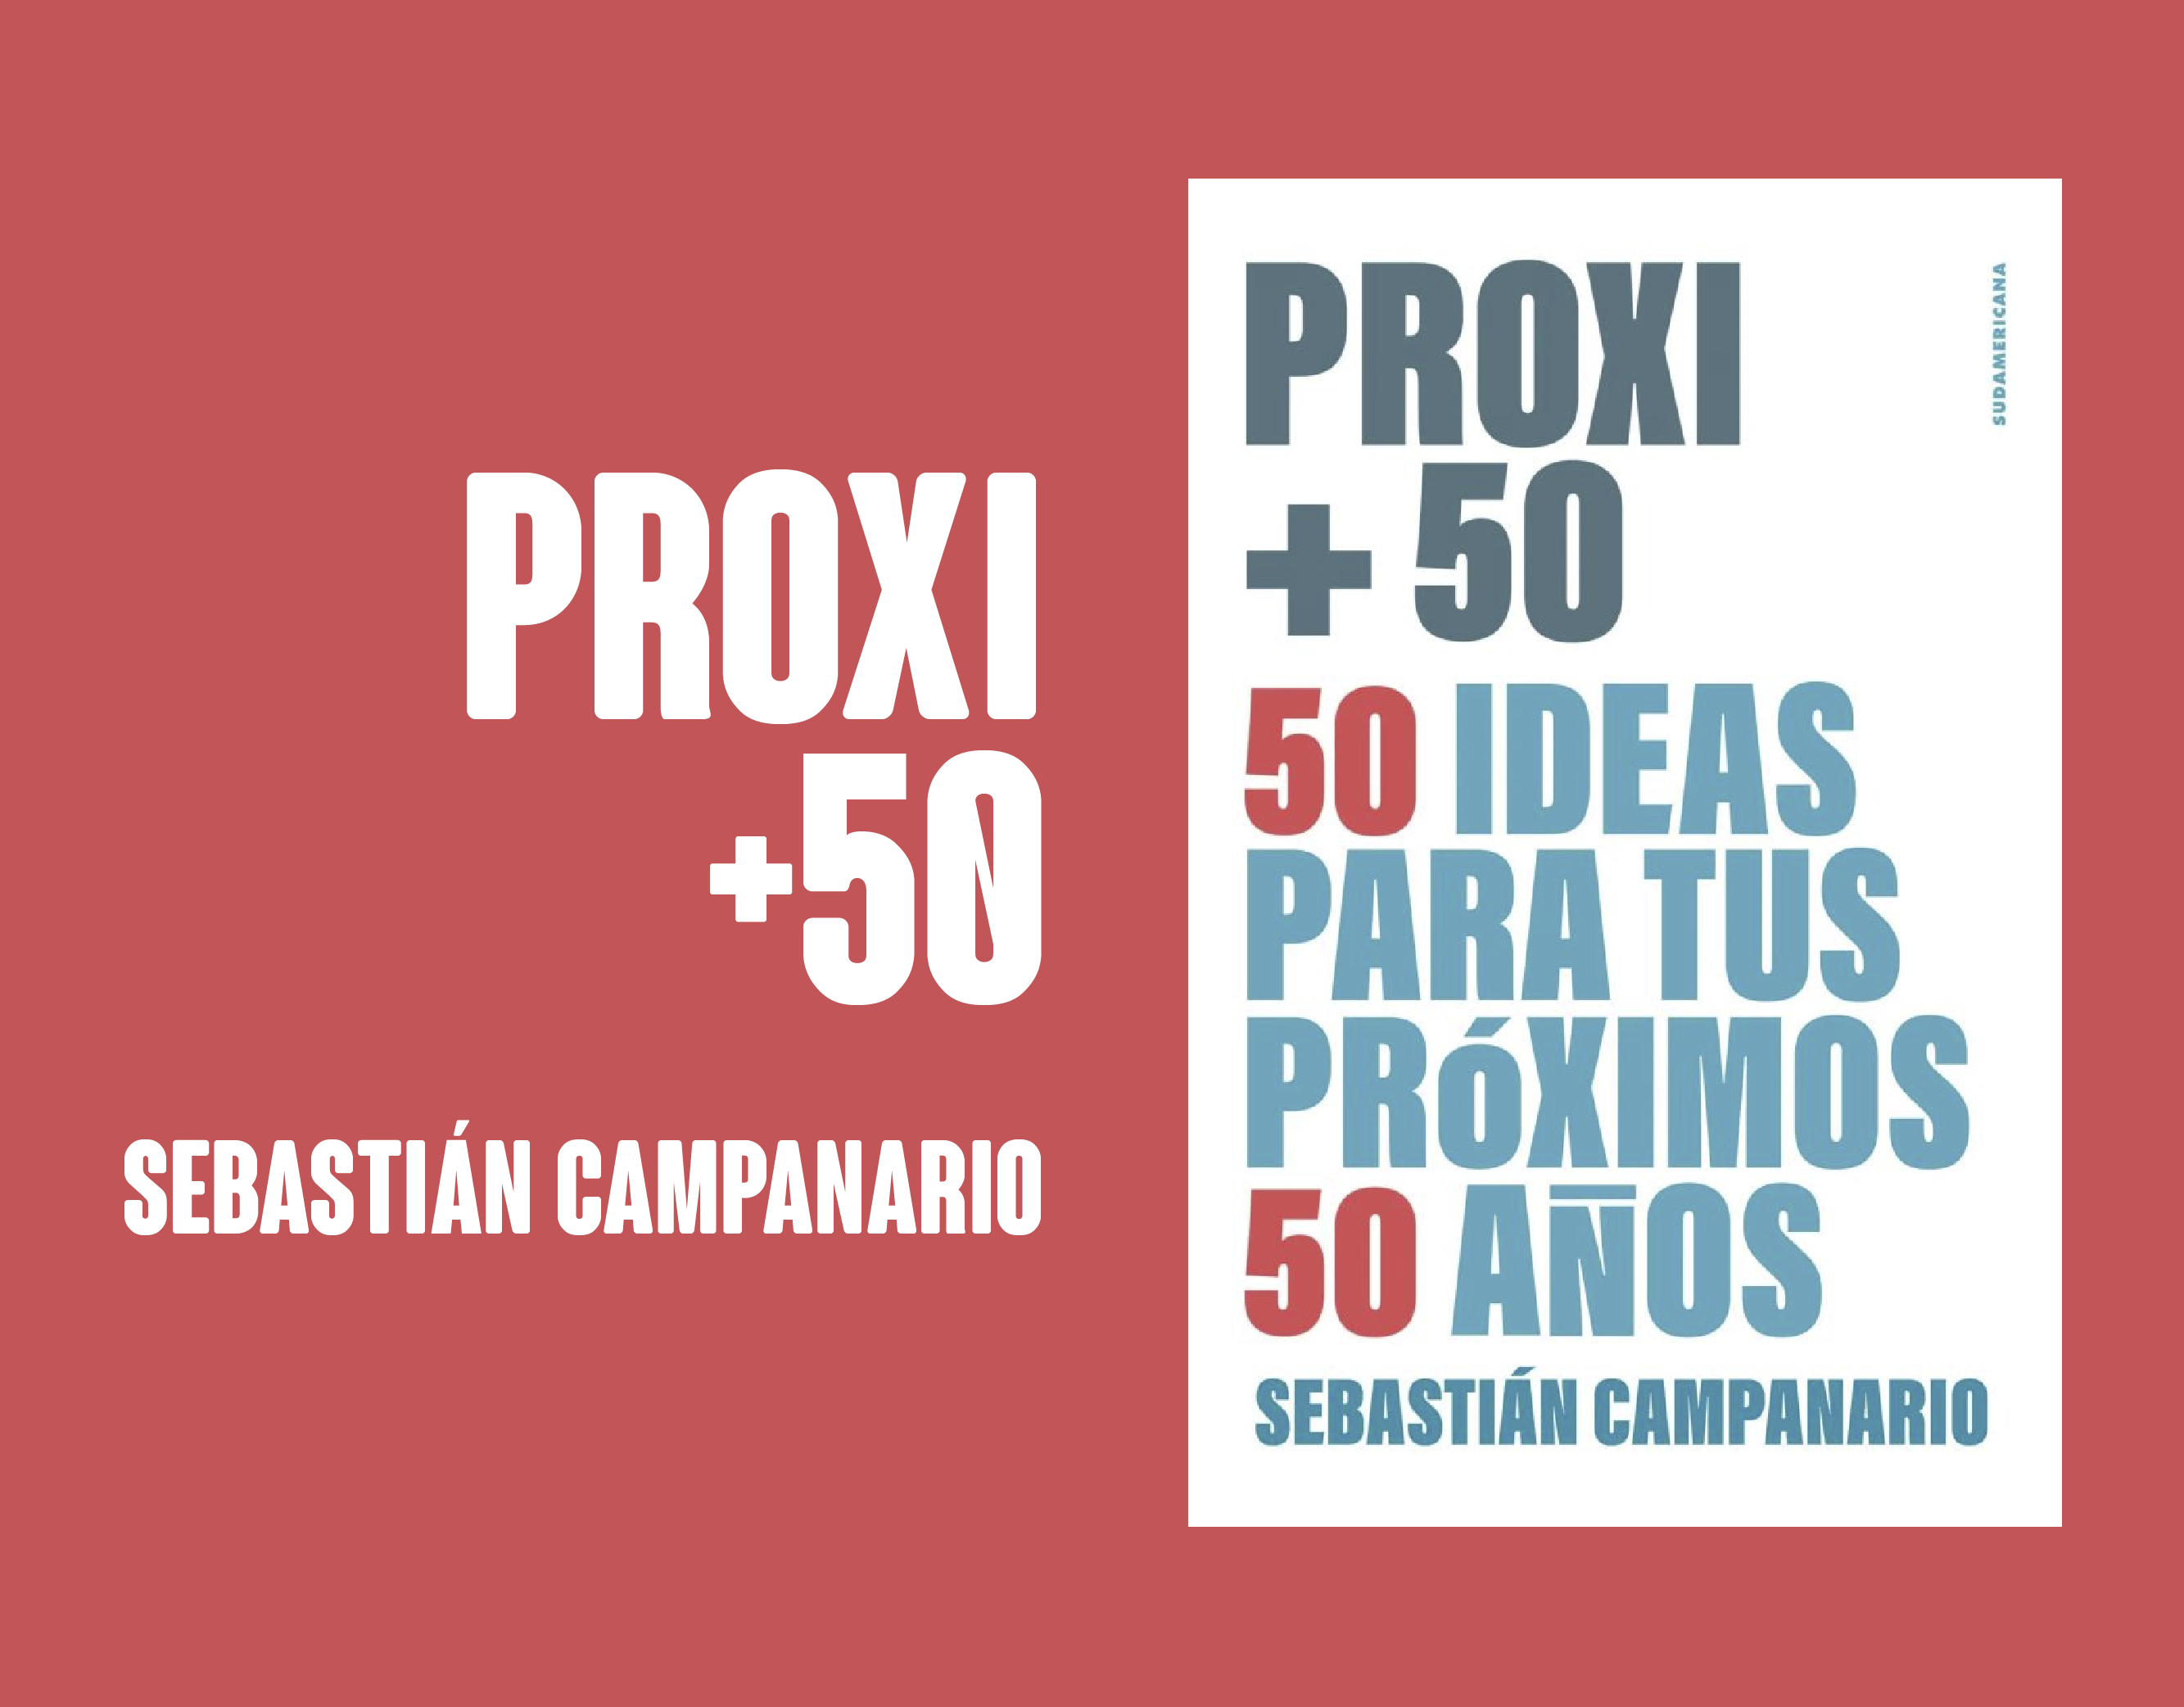 Proxi +50